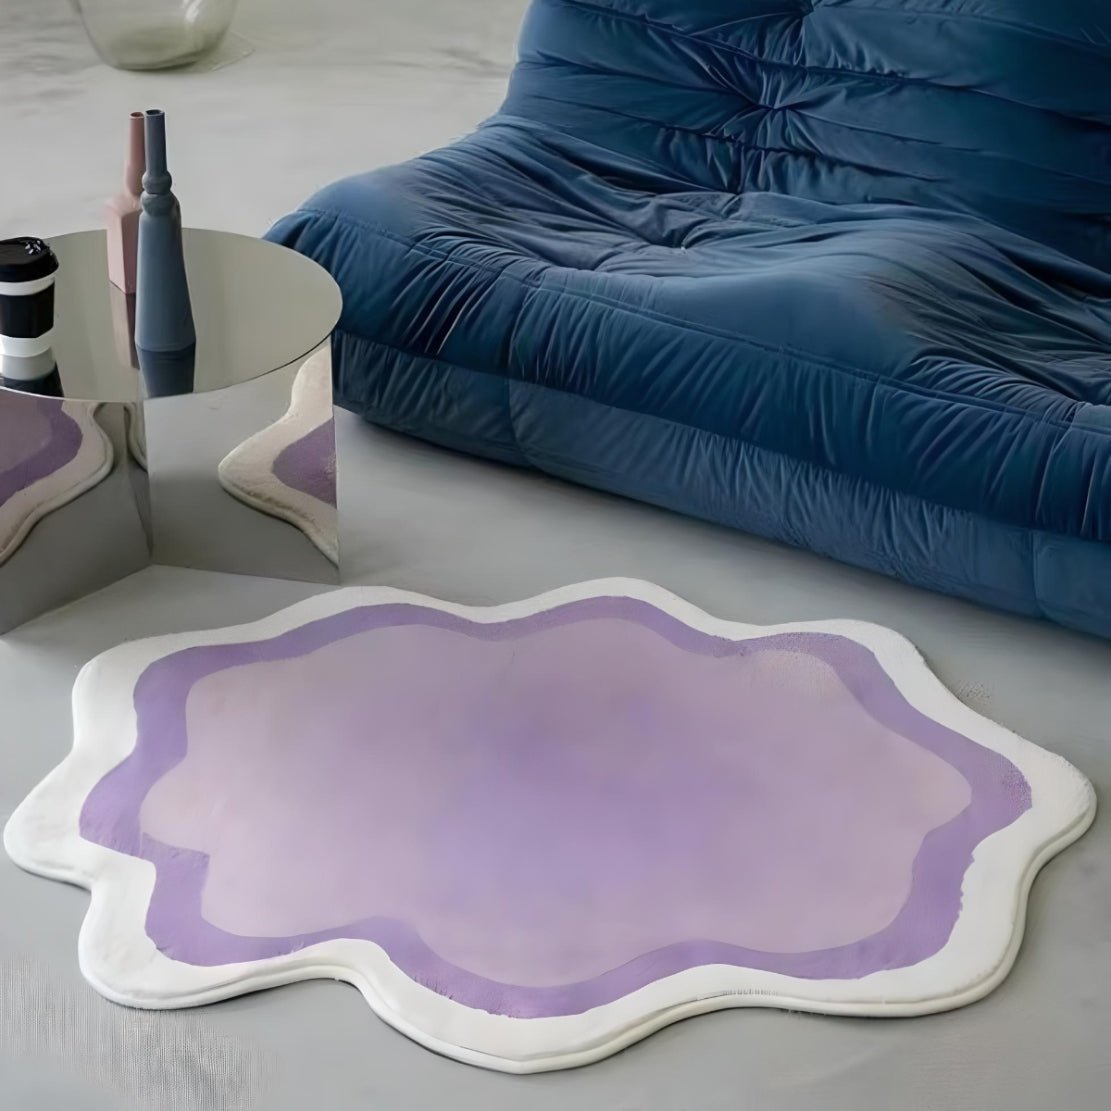 Asymmetrical, gradient purple floor rug